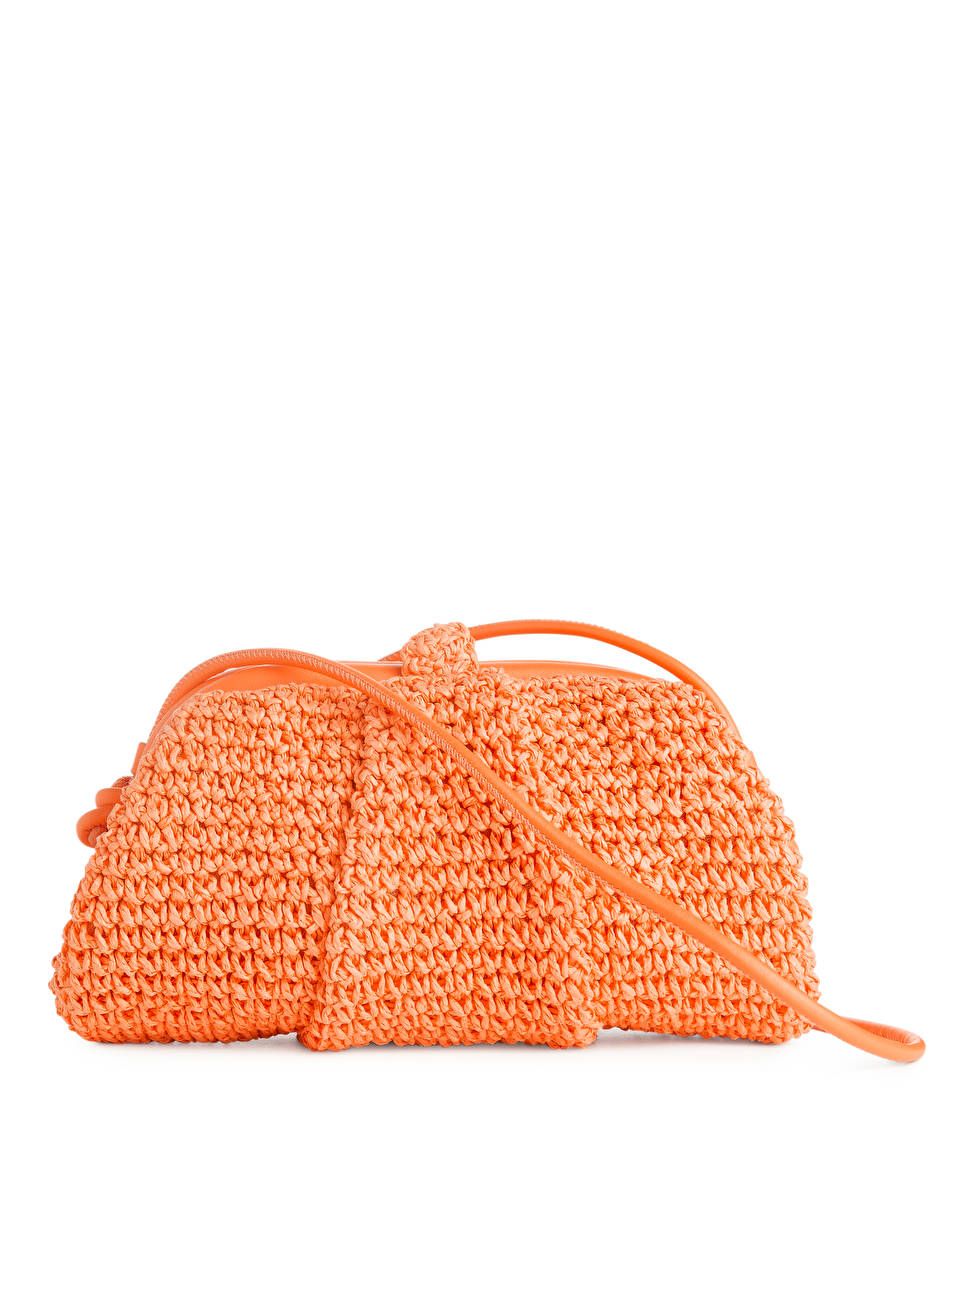 Stroh-Clutch mit Lederbesatz - Orange - Bags & accessories - ARKET DE | ARKET (DE)